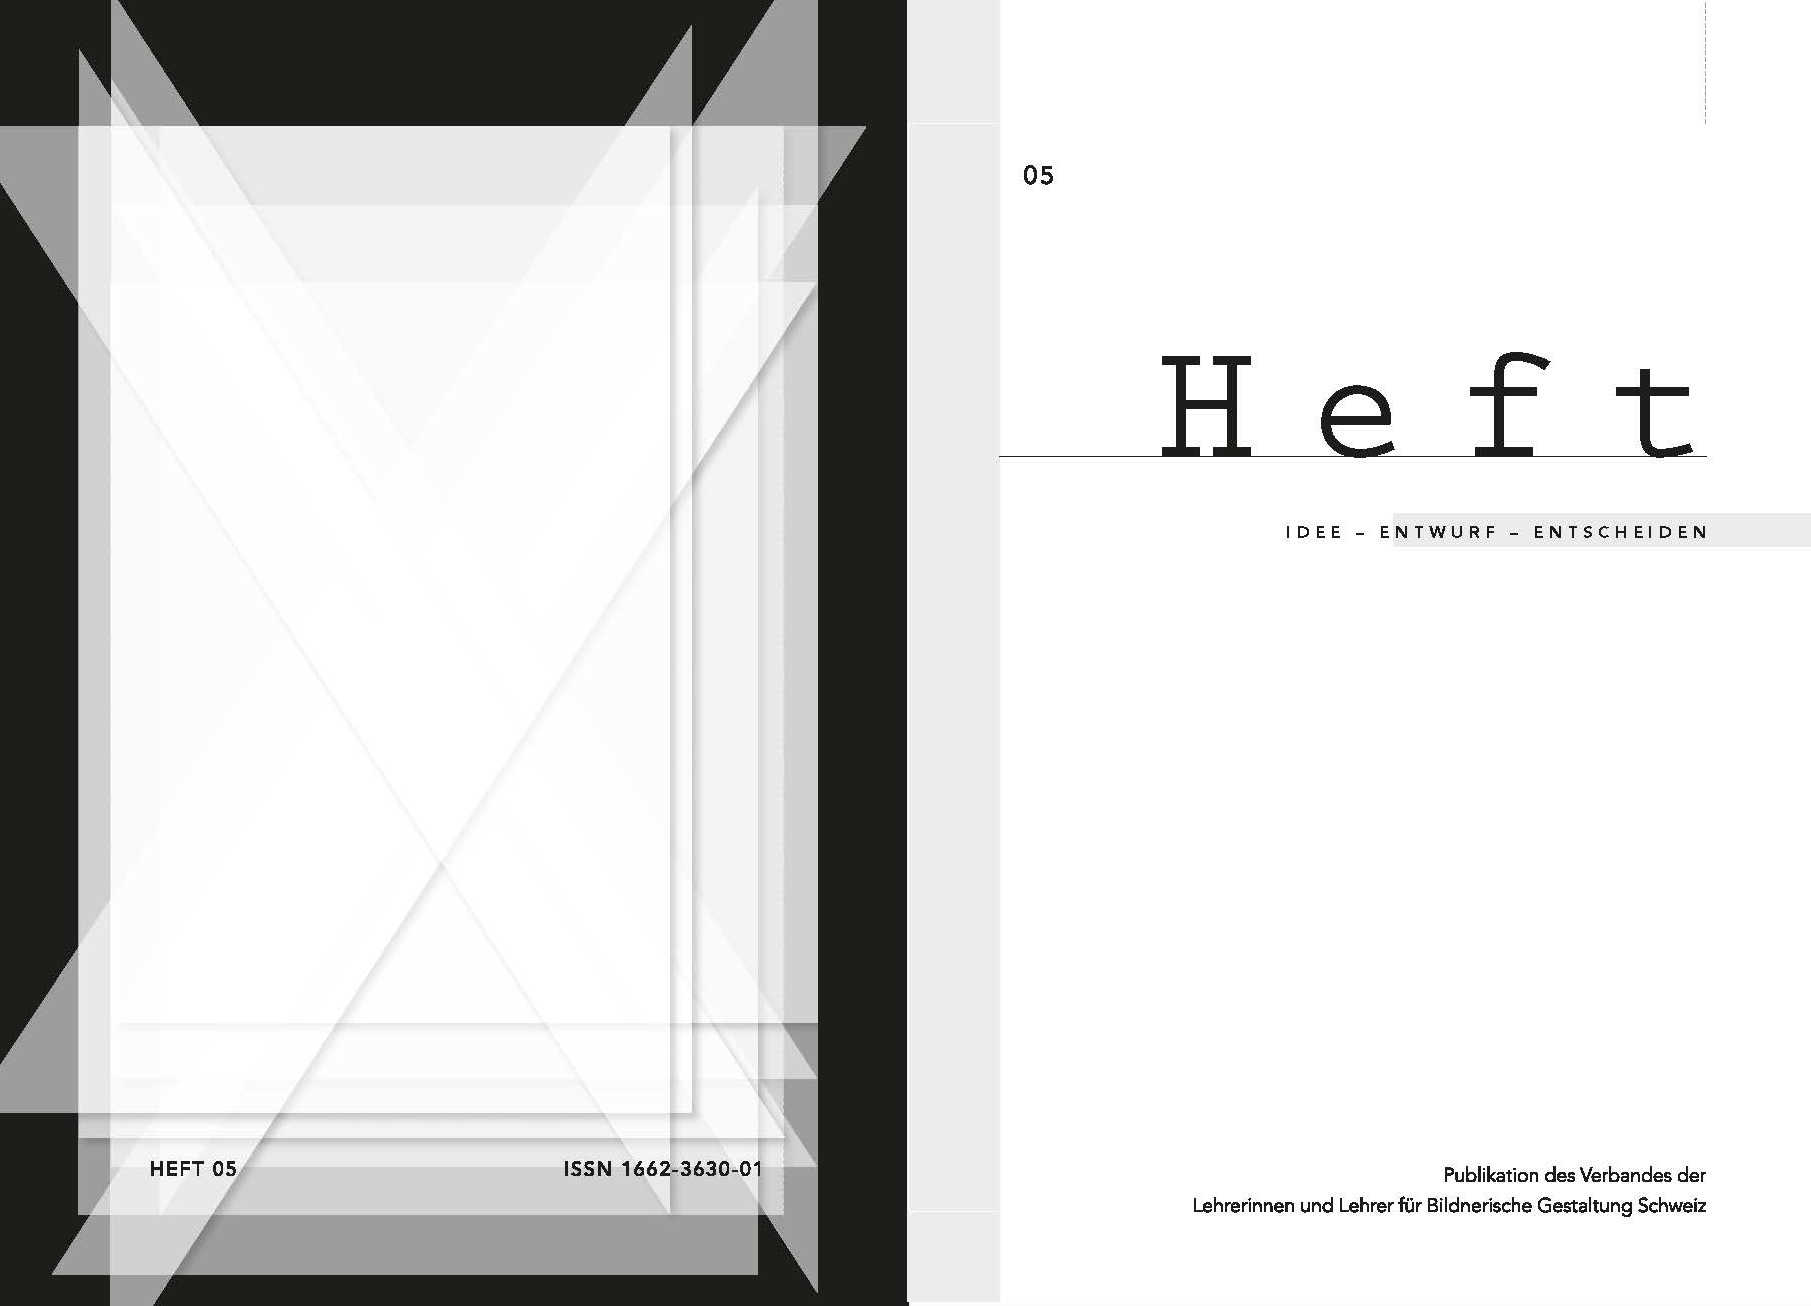 Heft 05 "Idee - Entwurf - Entscheiden" 2012